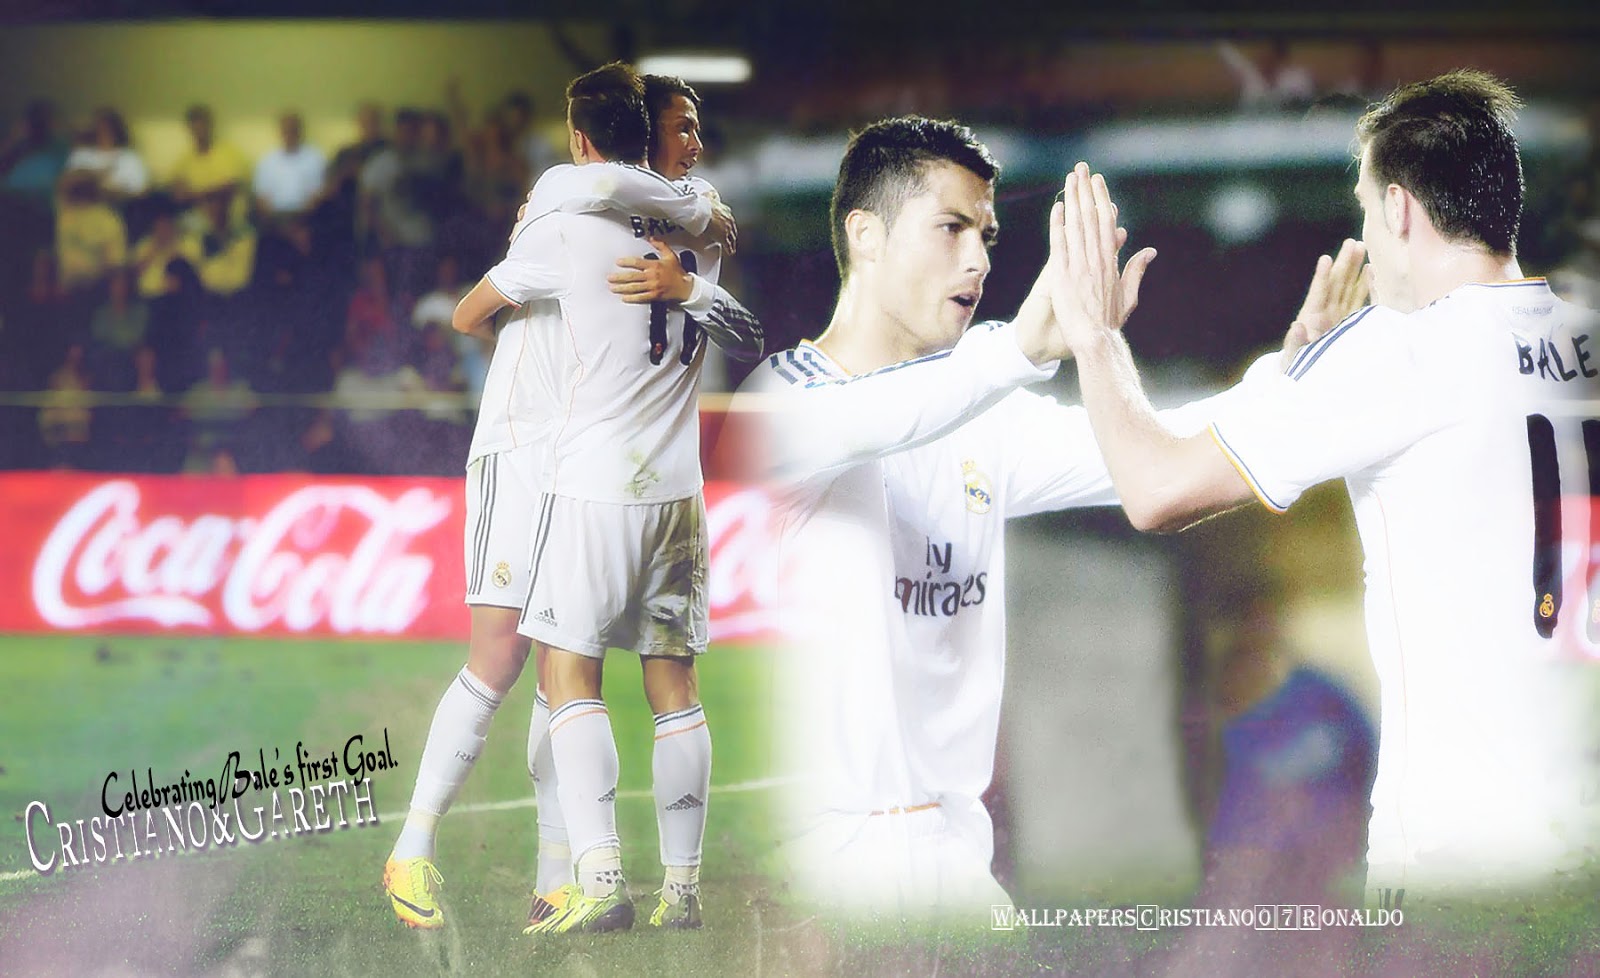 Cristiano Ronaldo Wallpaper Gareth Bale